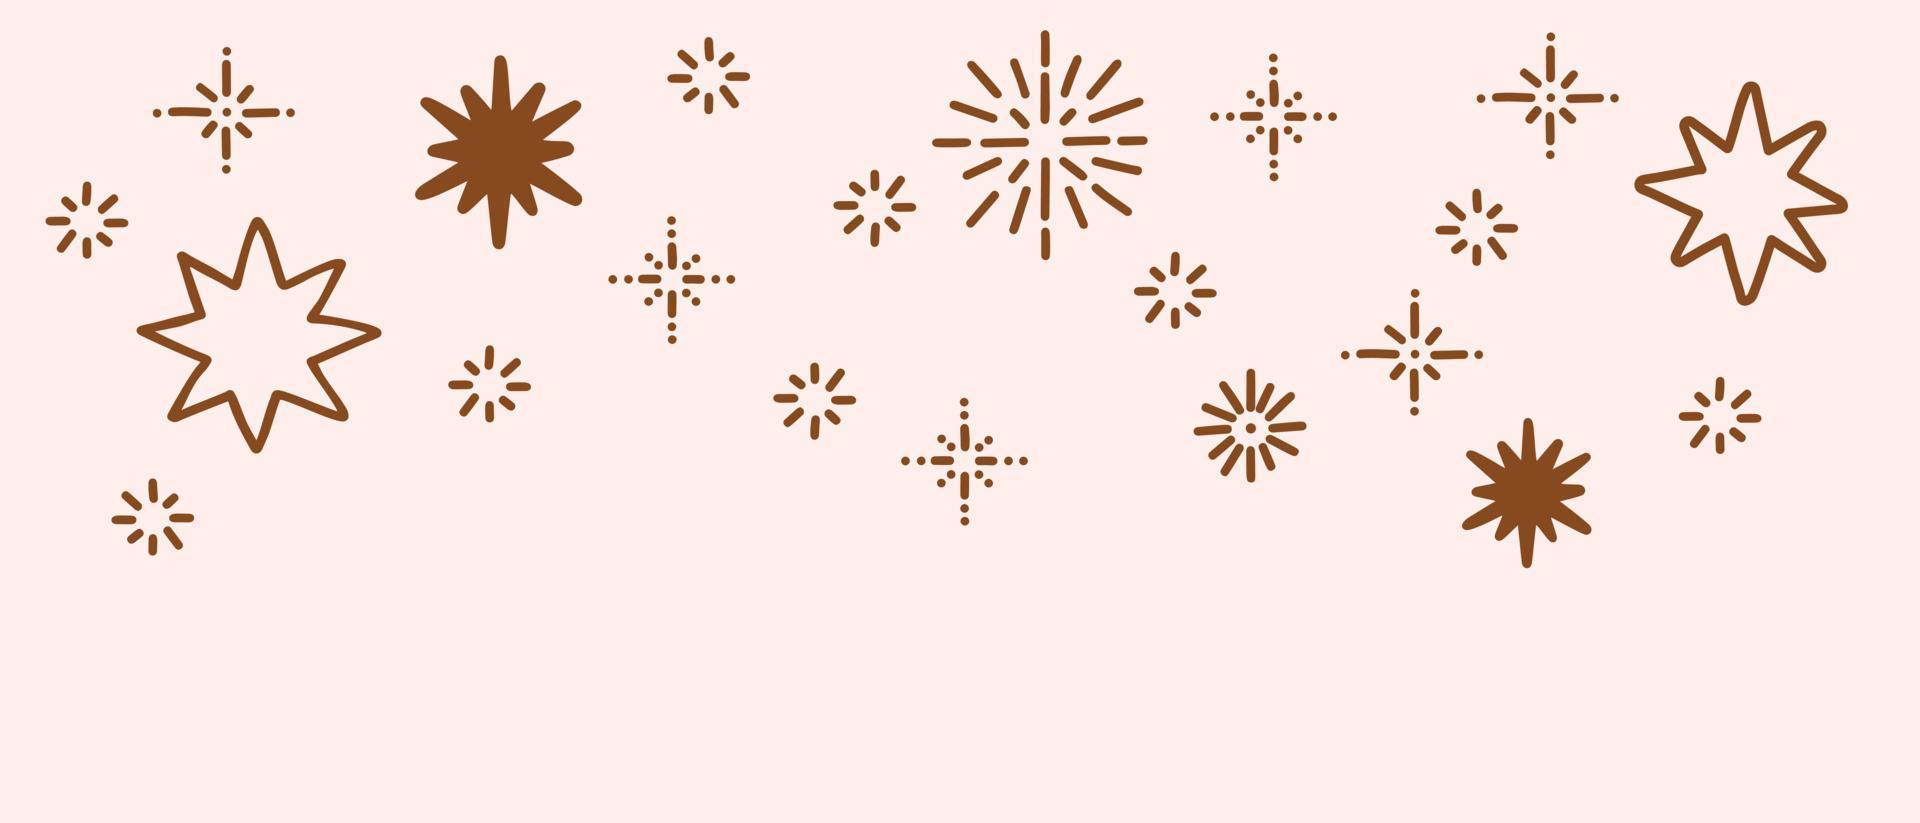 boho sterren naadloze vector grens. doodle handgetekende sterren banner, aardetinten, Boheemse decoratie voor kinderkamer, interieur. horizontale bannersjabloon voor web